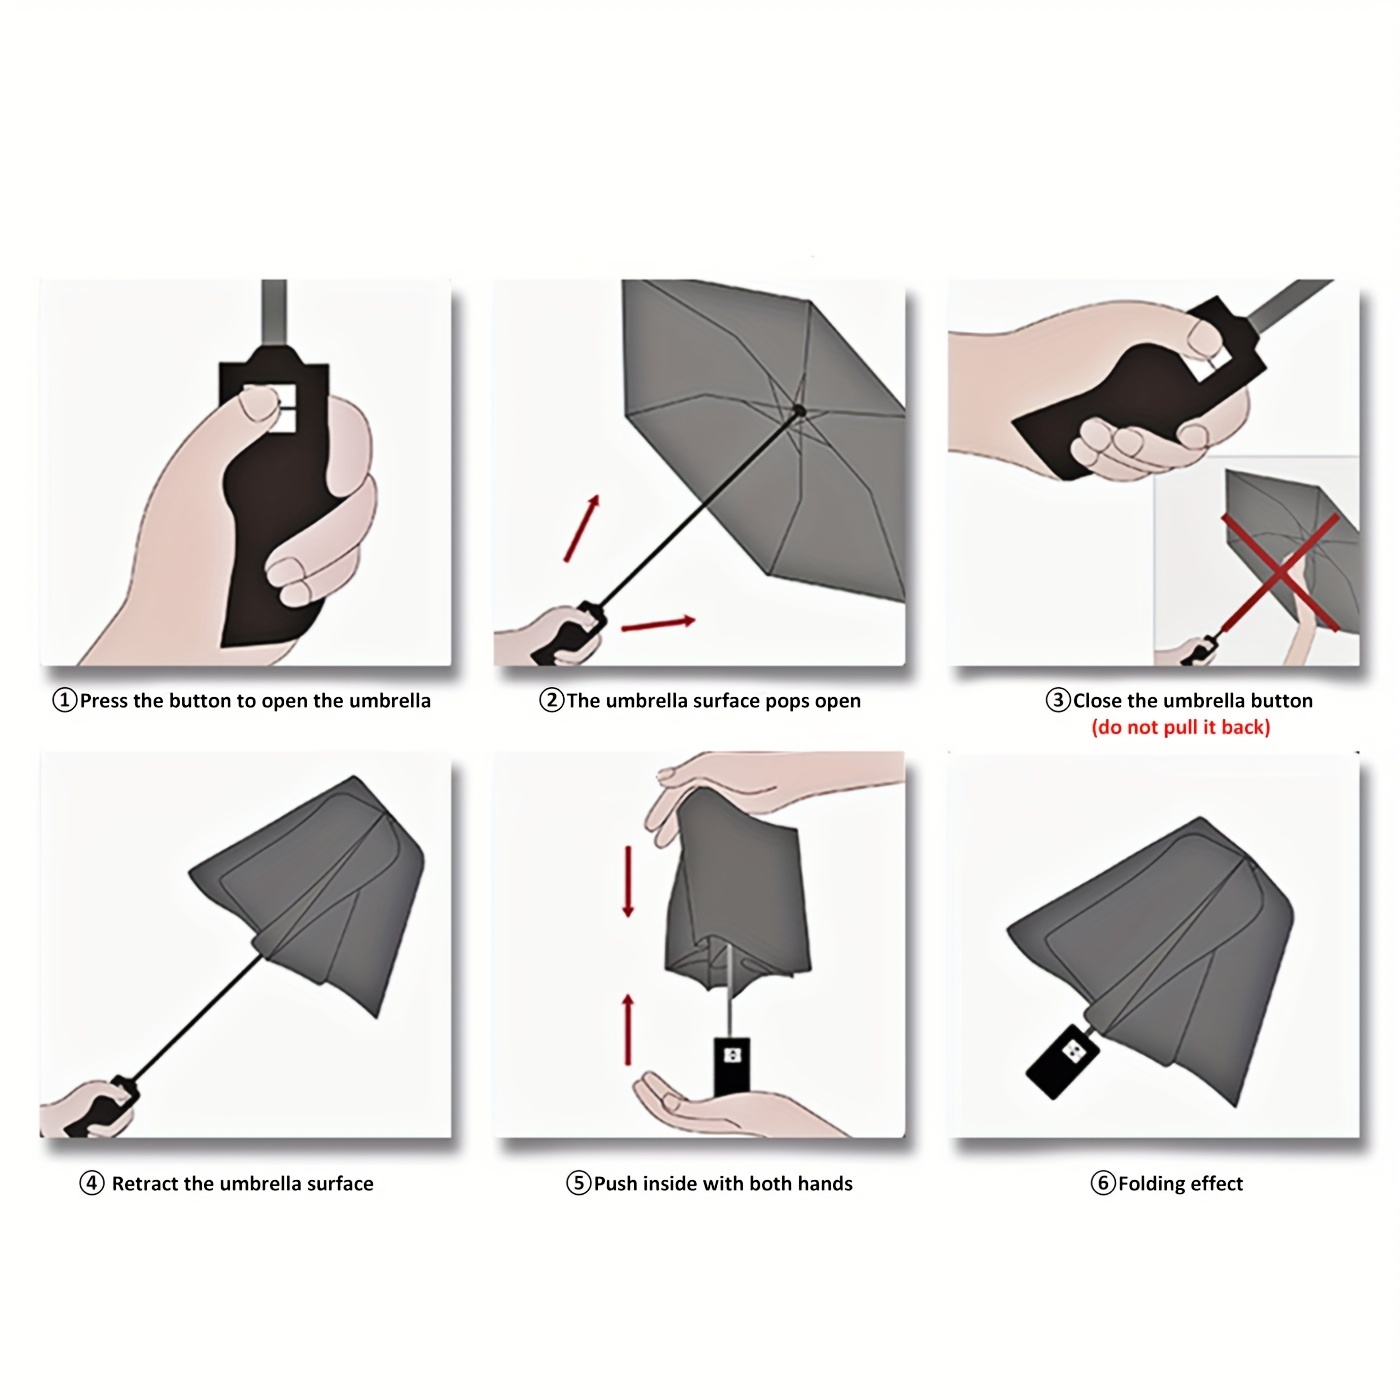 1pc Parapluie De Voyage Portable - Parapluies Entièrement